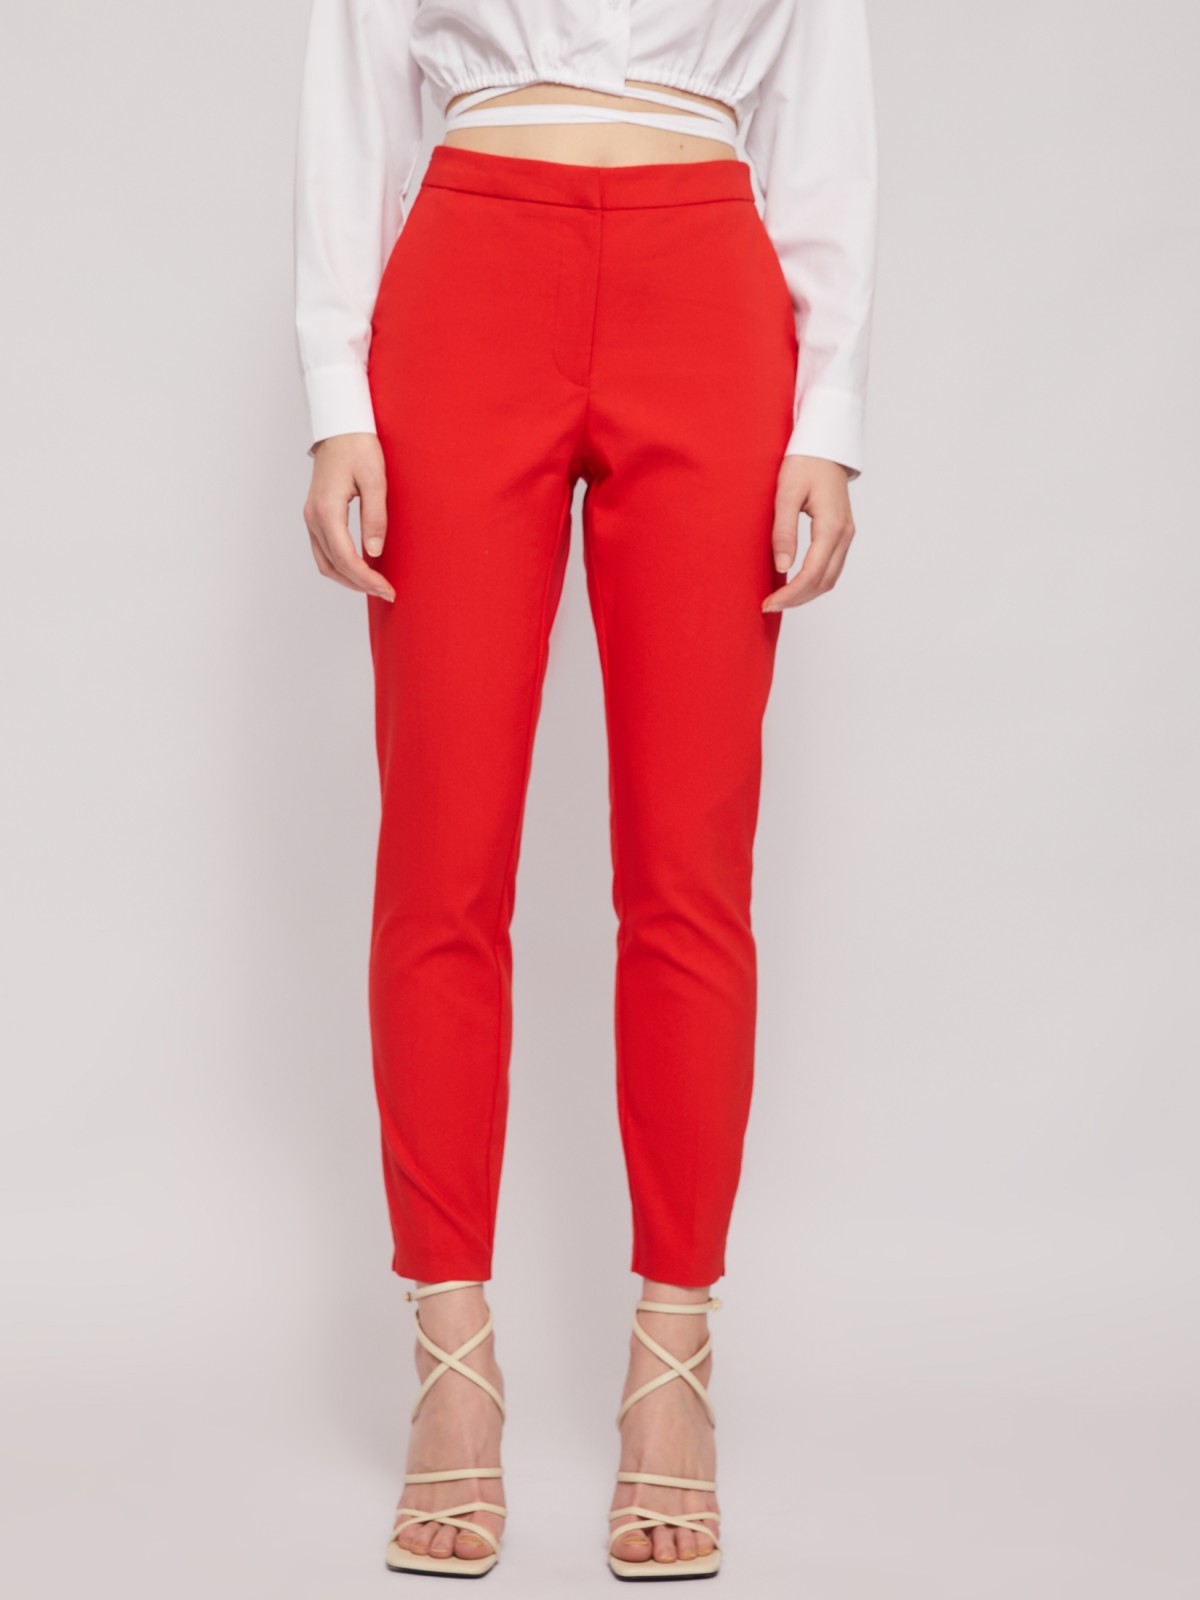 Офисные брюки силуэта Slim на резинке со стрелками zolla 024227370012, цвет красный, размер M